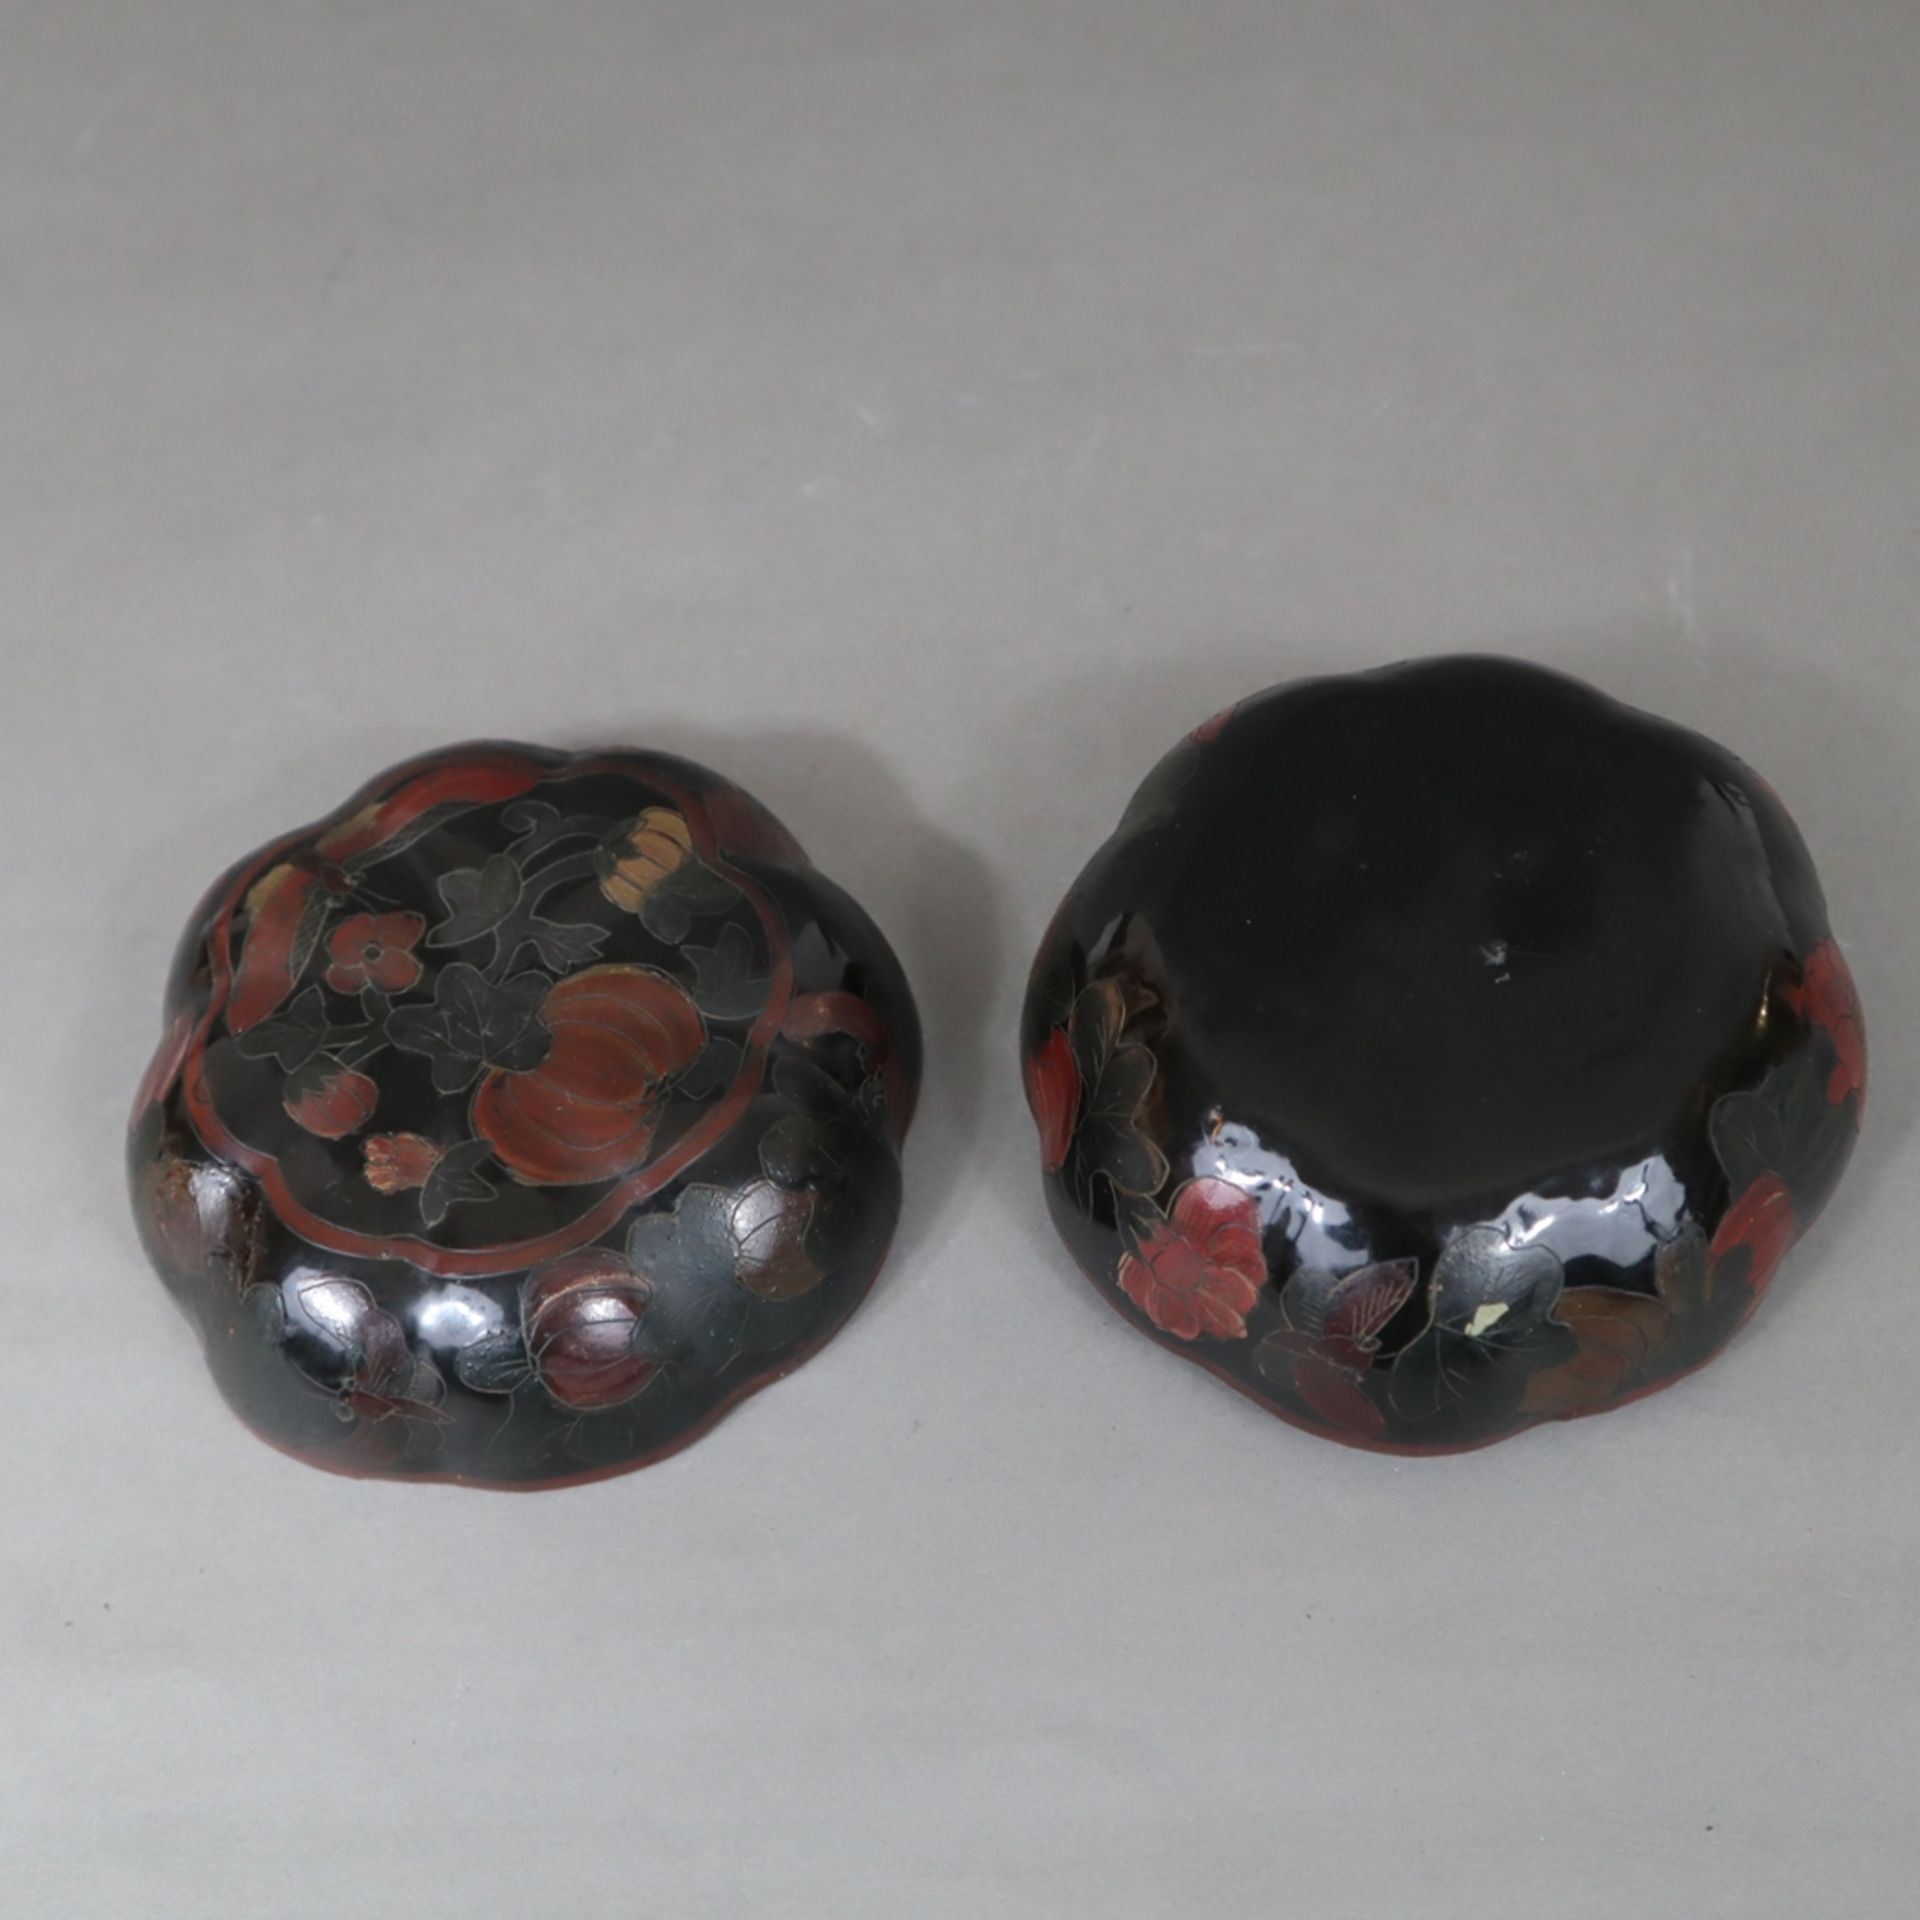 Lackdose - Kürbisform mit Stülpdeckel, schwarzer und roter Lack auf Pappmaché, graviert und bemalt, - Bild 7 aus 8